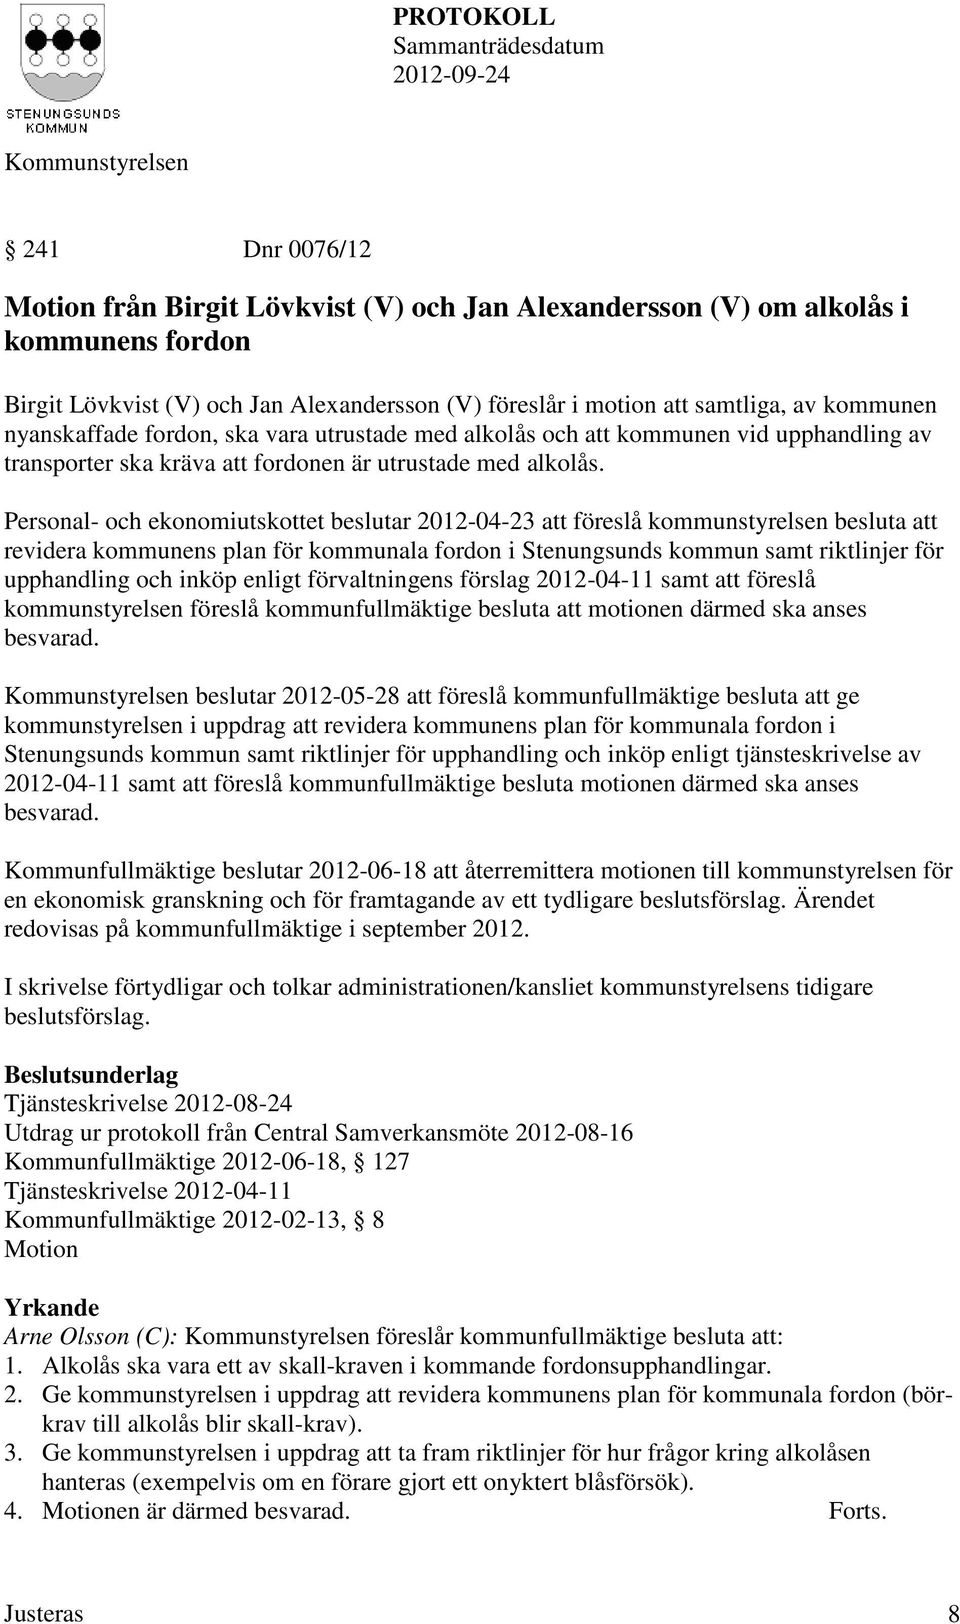 Personal- och ekonomiutskottet beslutar 2012-04-23 att föreslå kommunstyrelsen besluta att revidera kommunens plan för kommunala fordon i Stenungsunds kommun samt riktlinjer för upphandling och inköp